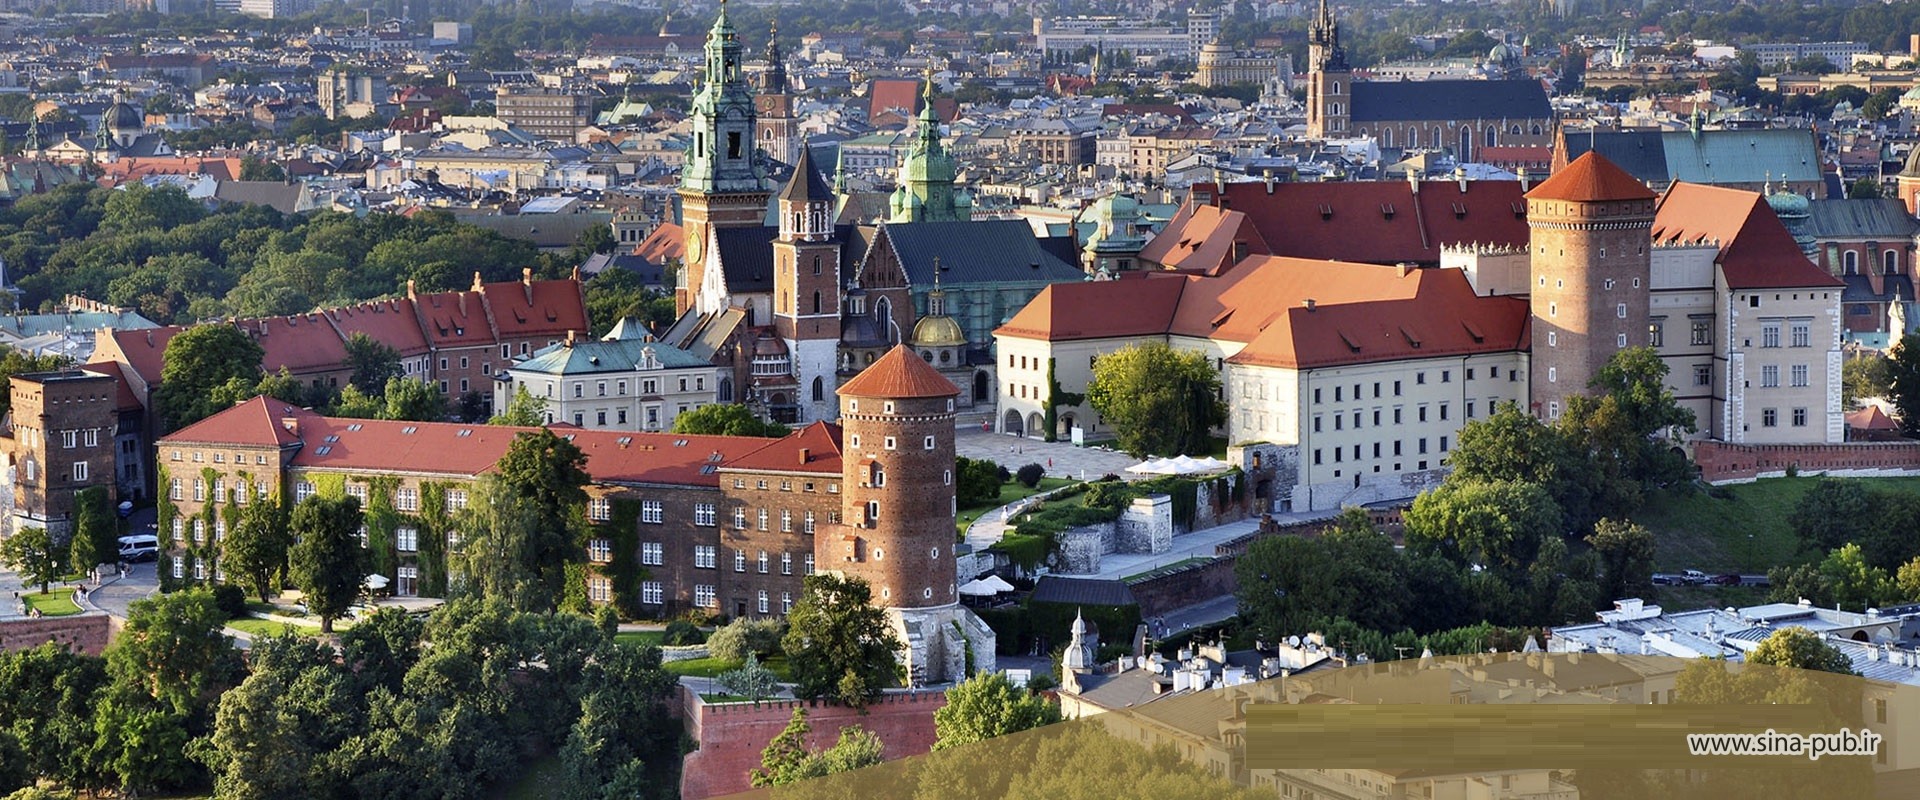 نحوه ارزشیابی مدارک در لهستان